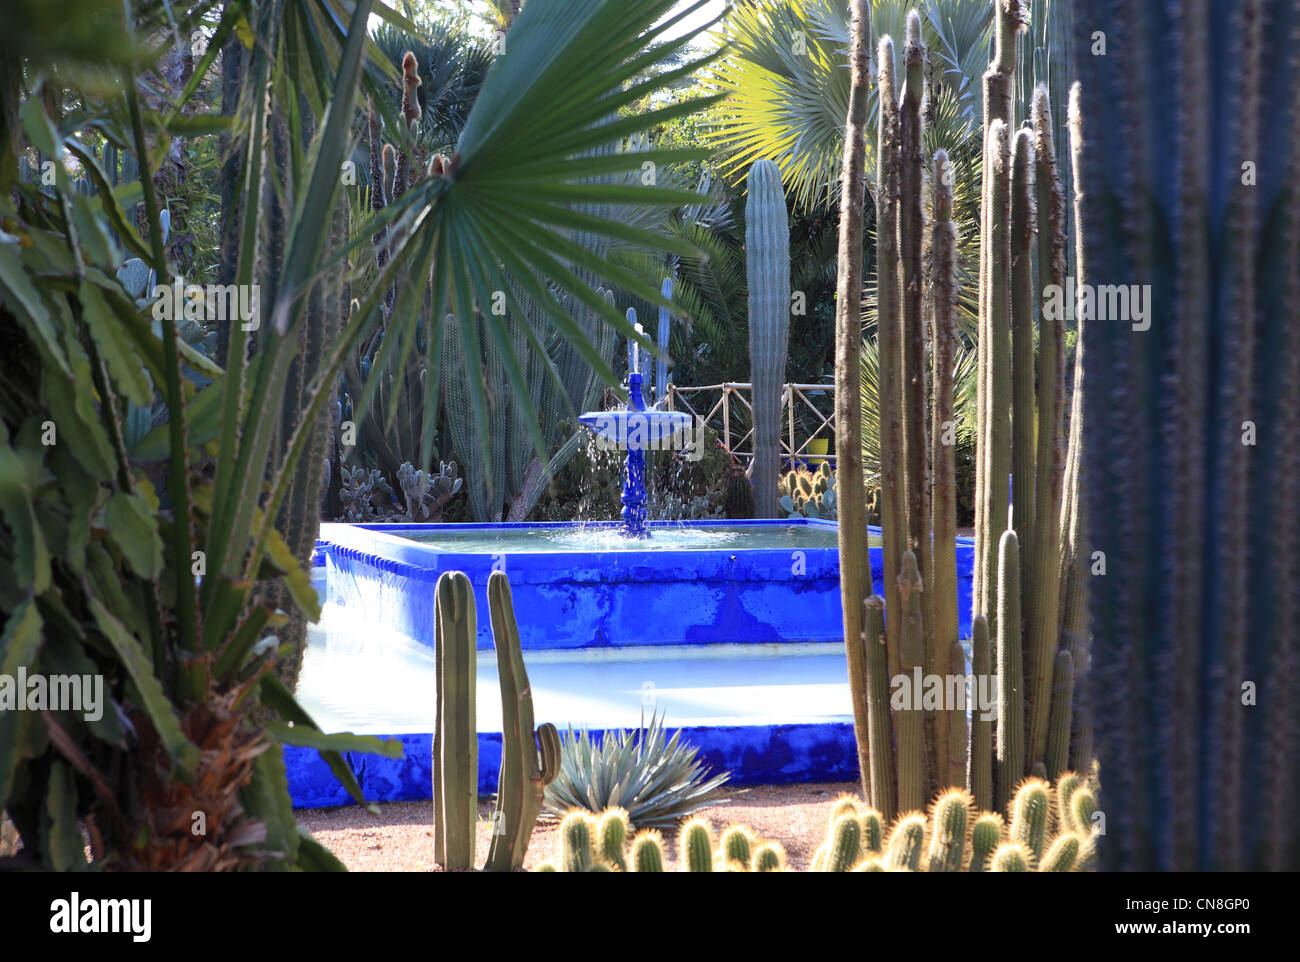 Le jardin Majorelle, conçu par Jacques Majorelle et restauré par Yves Saint Laurent, à Marrakech, Maroc, Afrique du Nord Banque D'Images